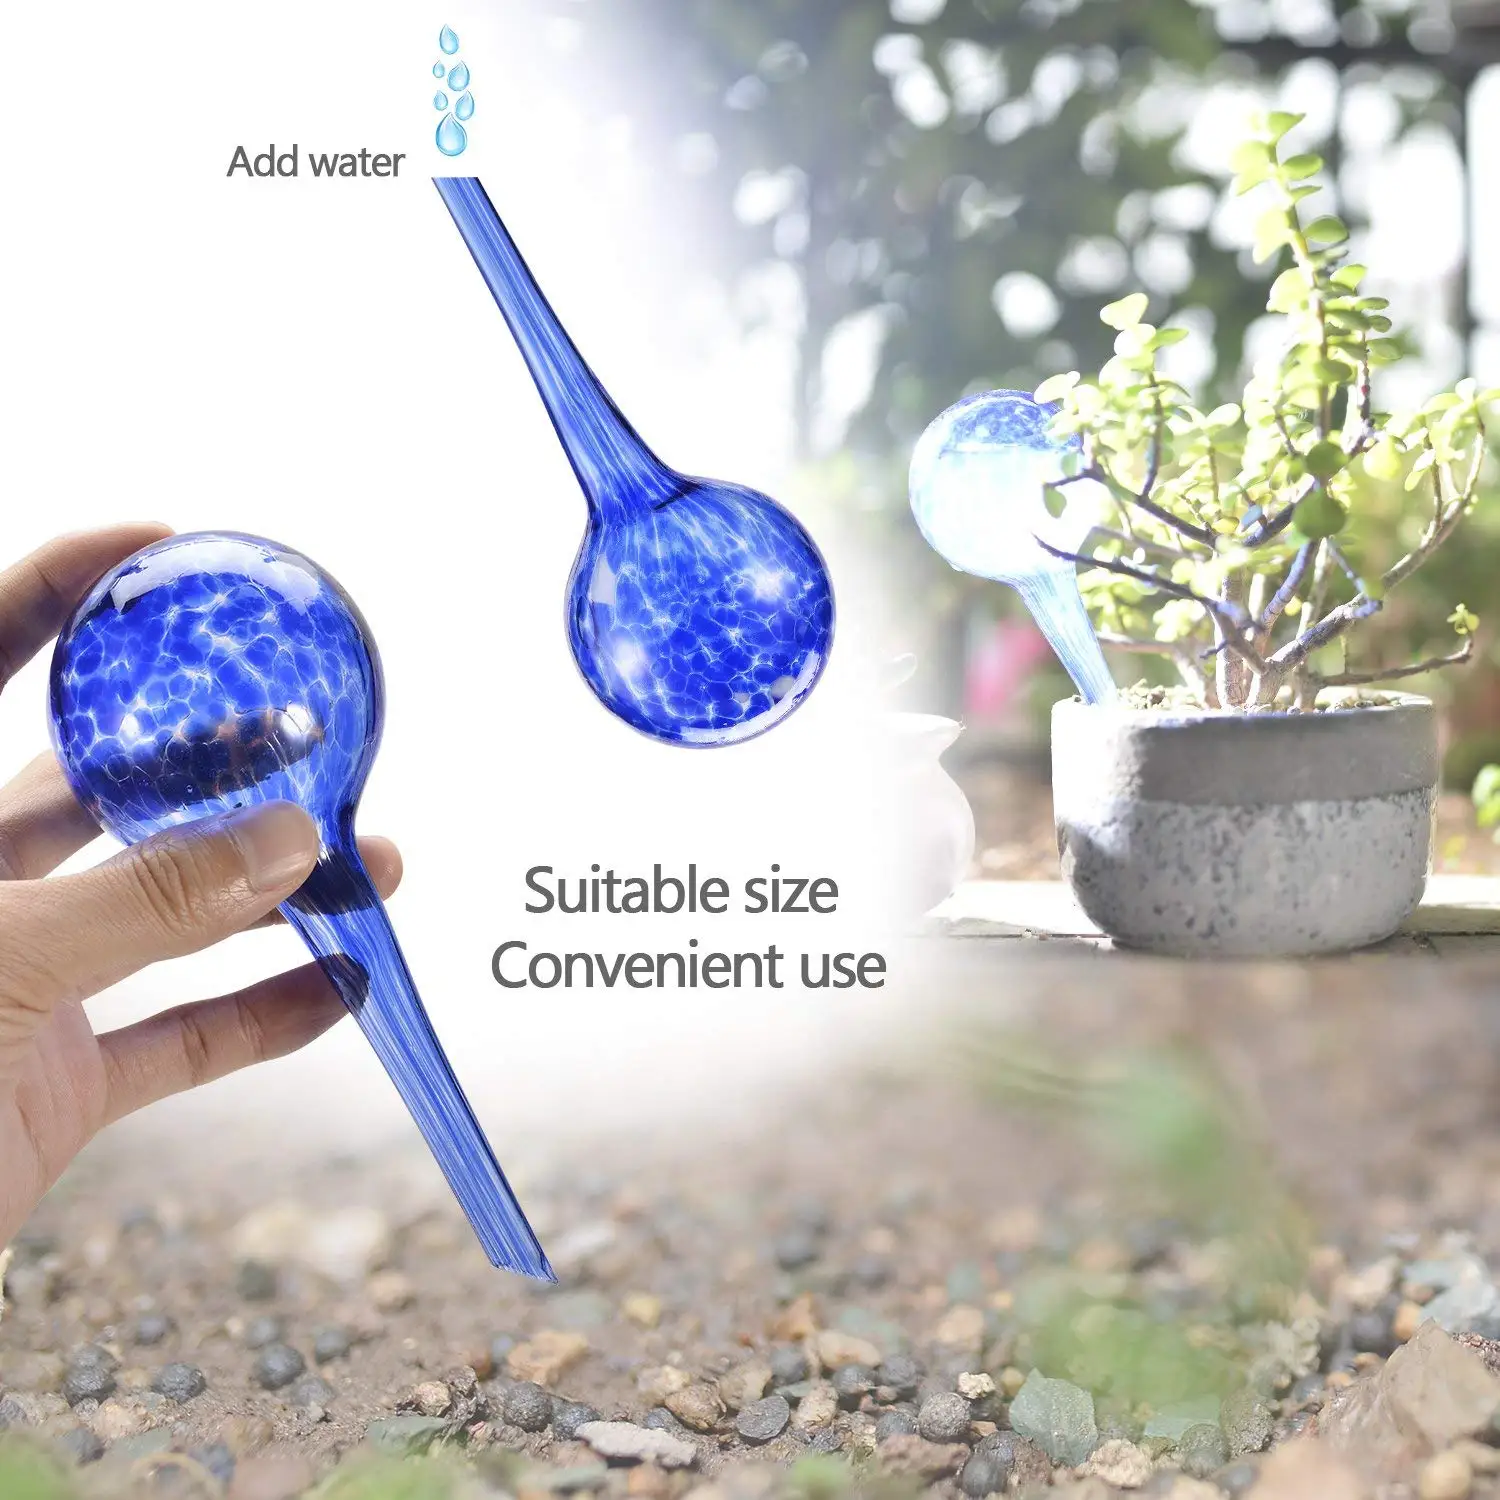 Мода автоматический полив Аква Глобус мини декоративный ручной выдувное стекло в форме небольшого цветка лампы-4 шт. Улучшенный набор